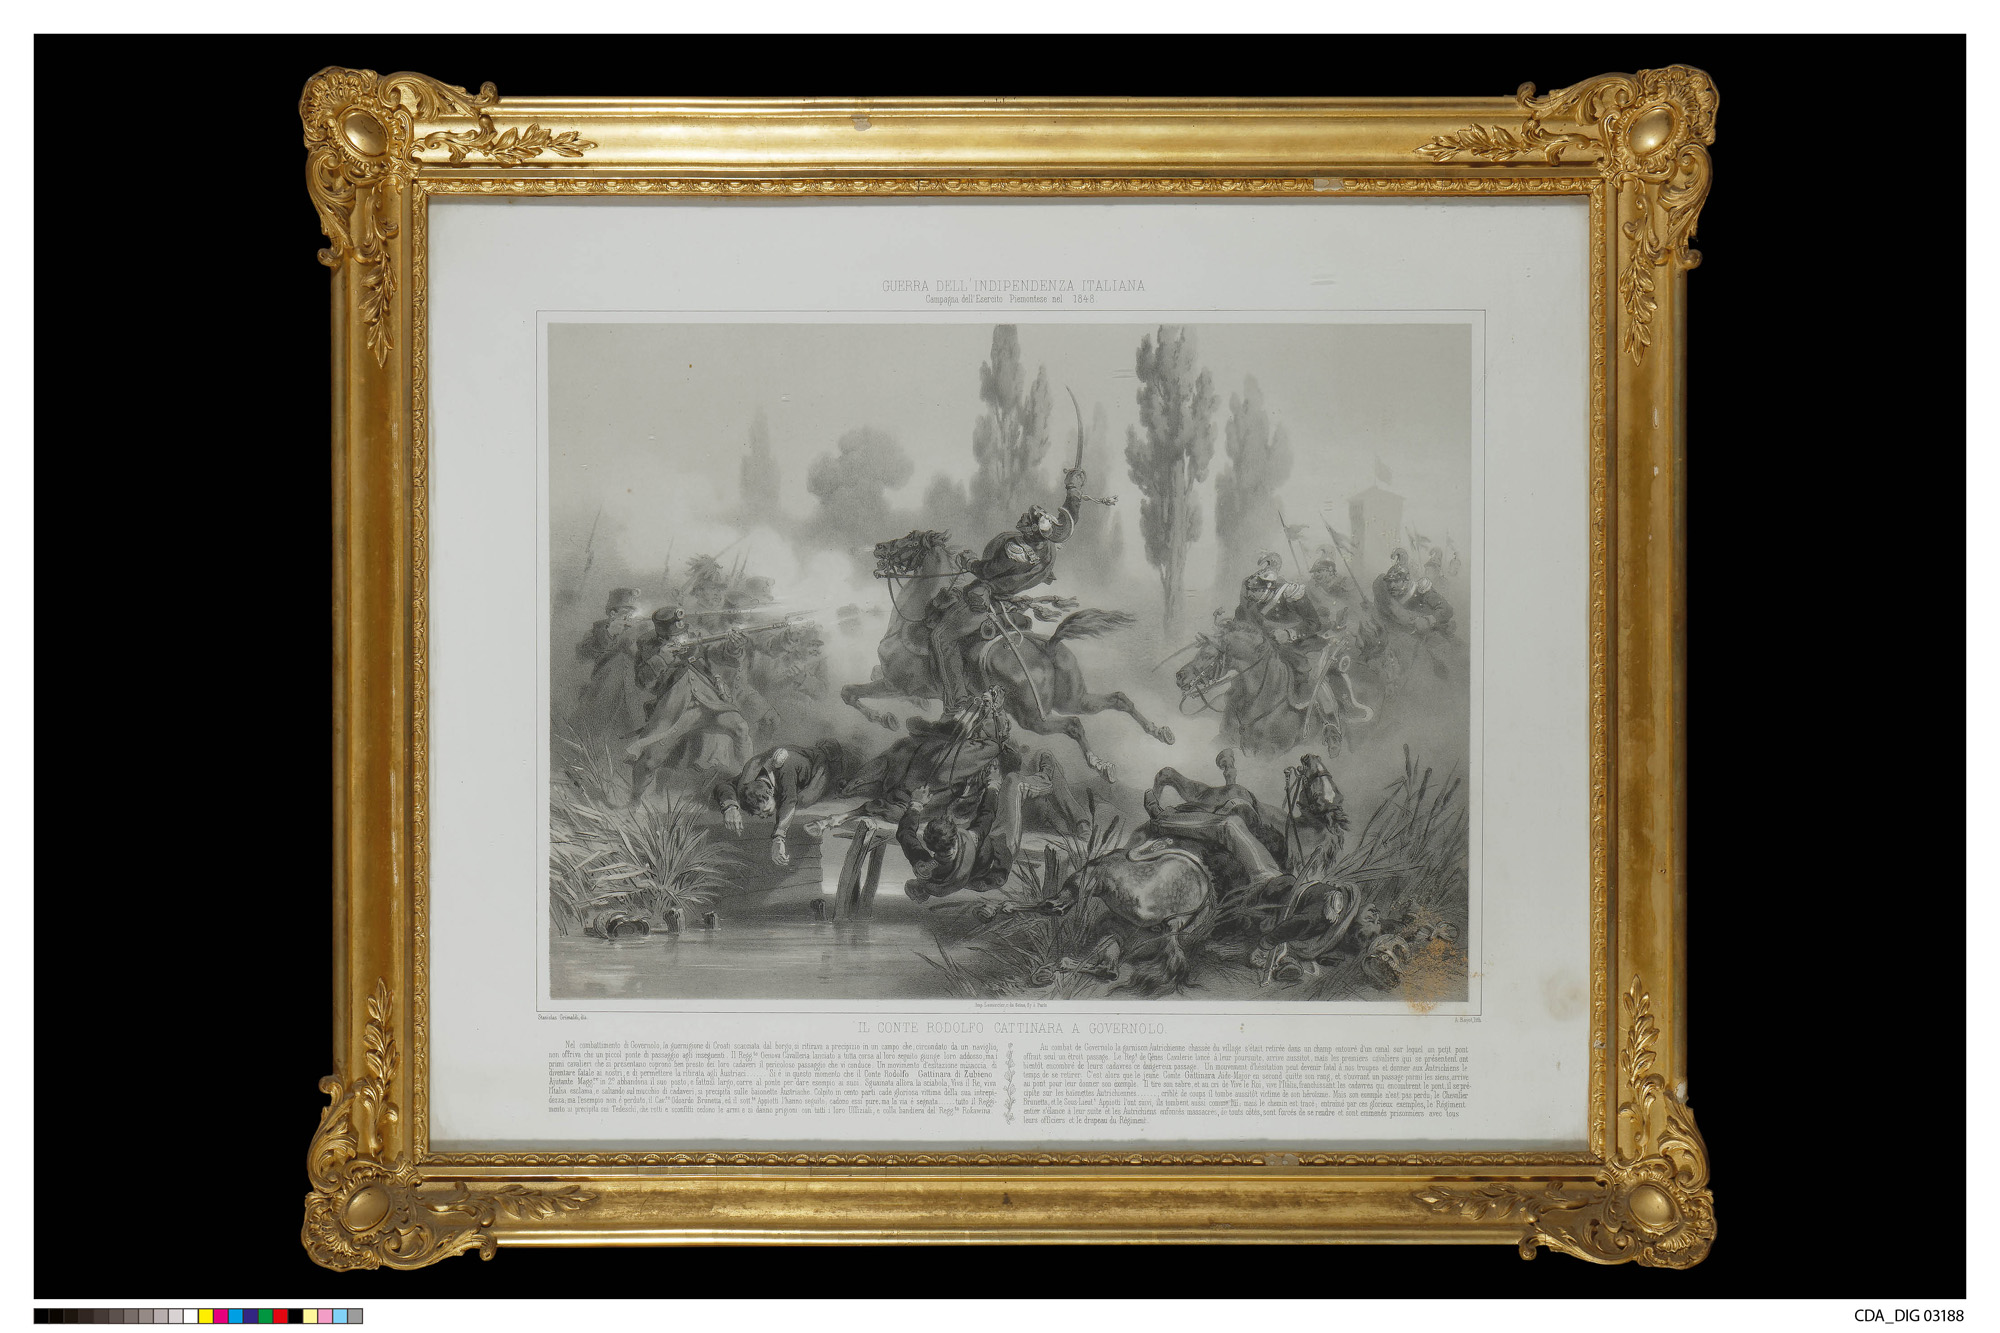 Assalto di un ufficiale a cavallo contro un gruppo di nemici presso un ponte (stampa, serie) di Grimaldi, Stanislao, Bayot, Adolphe Jean-Baptiste, Bayot, Adolphe Jean-Baptiste (XIX)